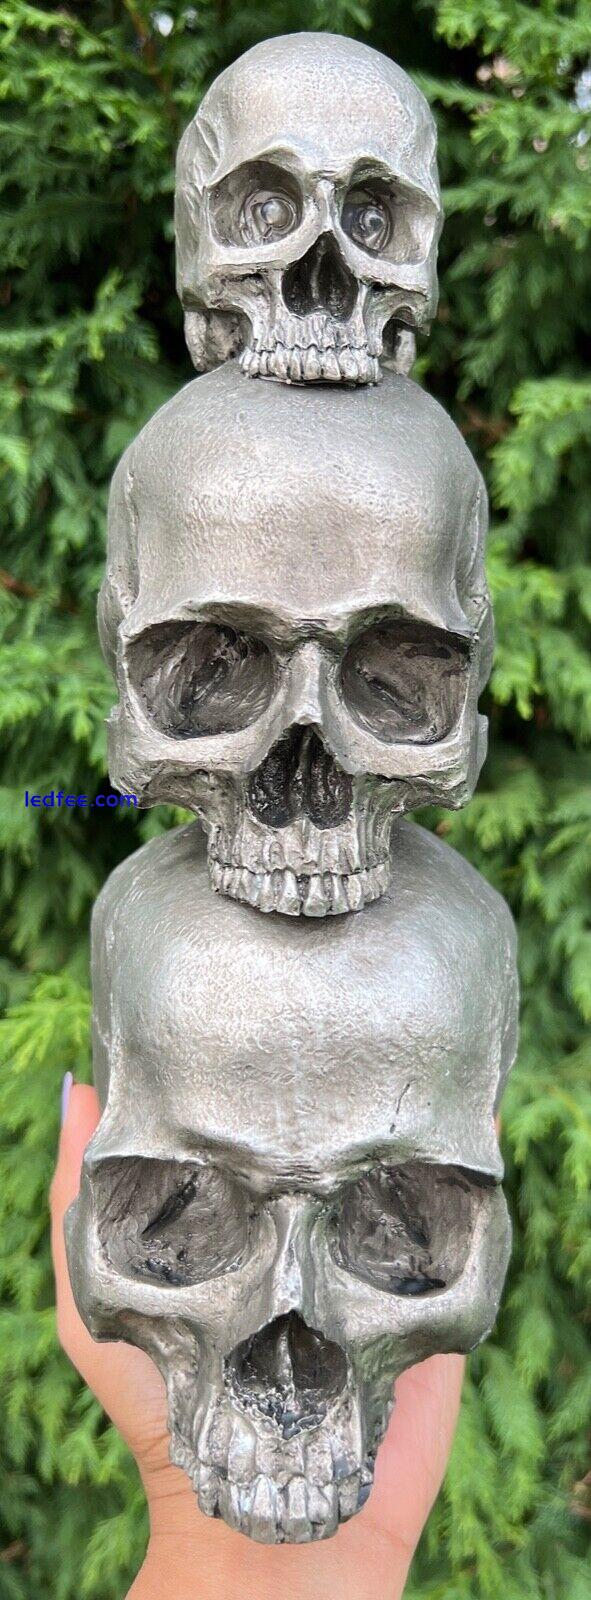 Skull Skeleton Lamps 3D LED Horror Halloween Desk Light Haunted House Ornament 2 